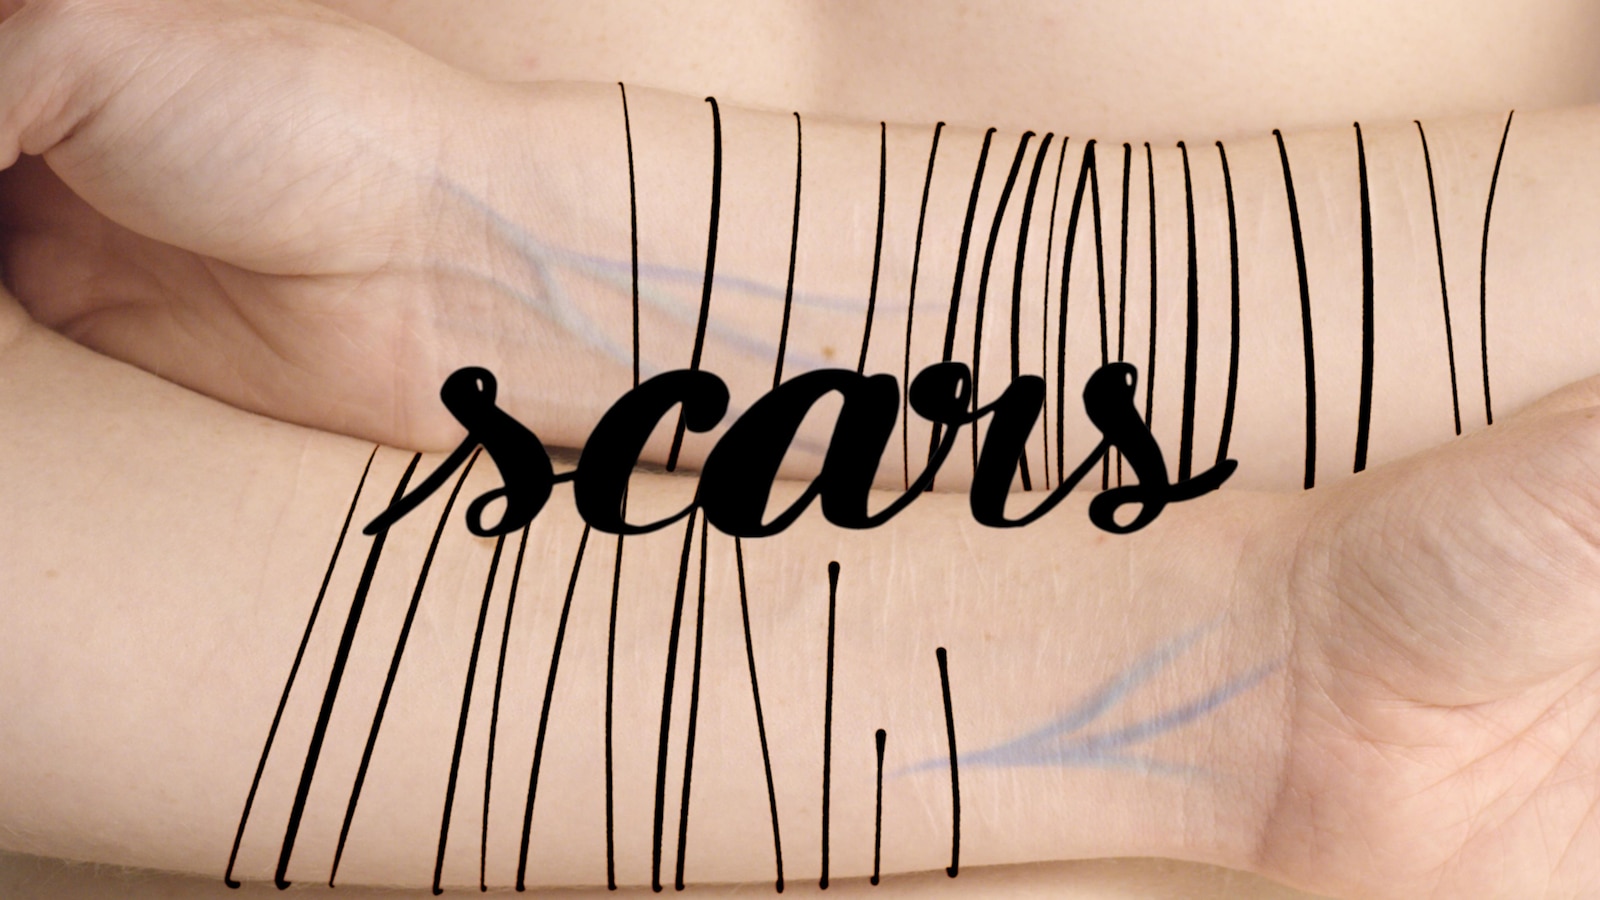 L'affiche du film montrant le titre Scars et des bras.